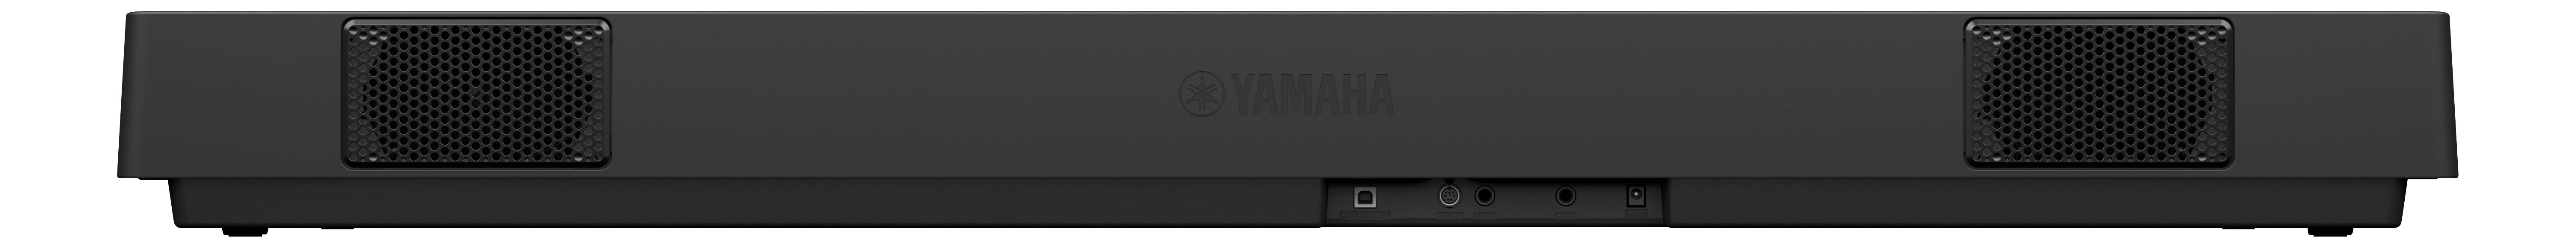 Yamaha P-145 Black - Piano digital portatil - Variation 1